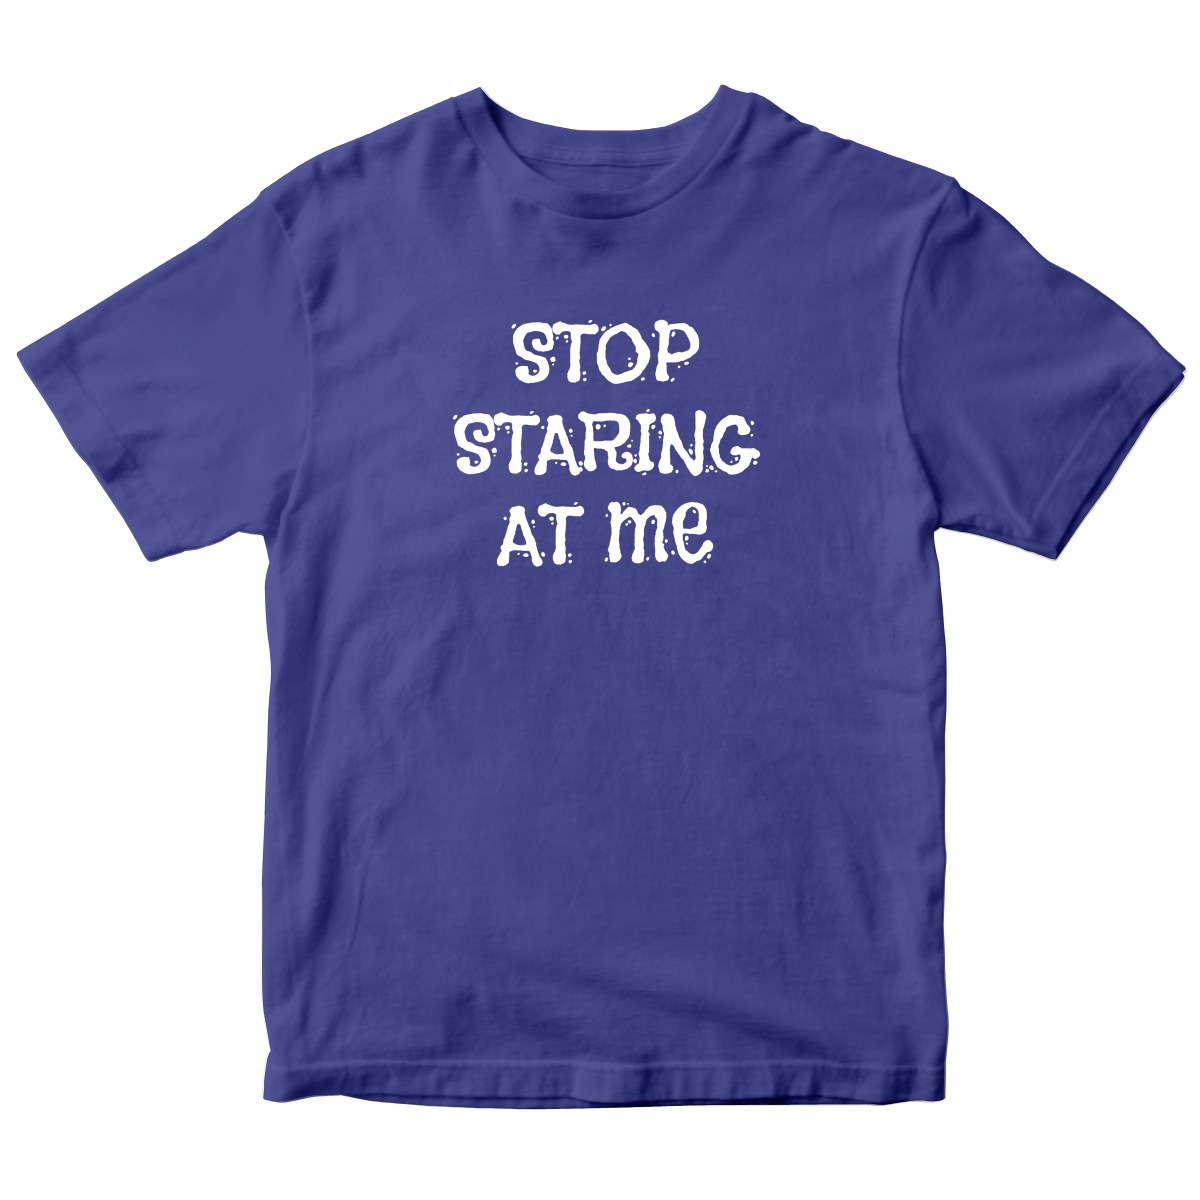 Stop Staring at Me Kids T-shirt | Blue